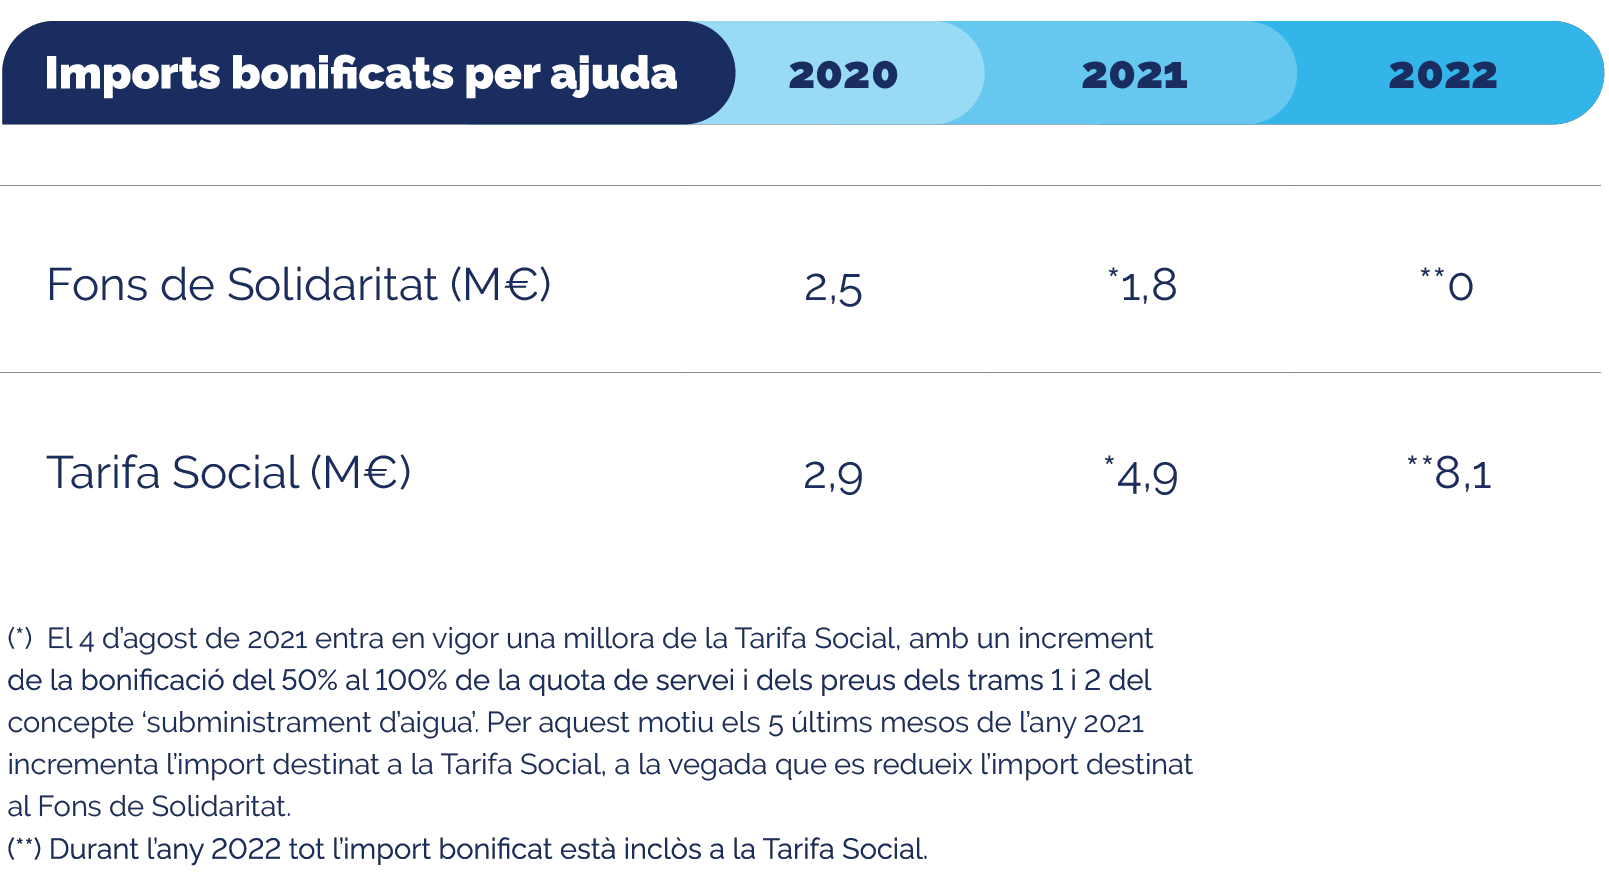 Infografia dels imports bonificats per ajuda de 2020 a 2022